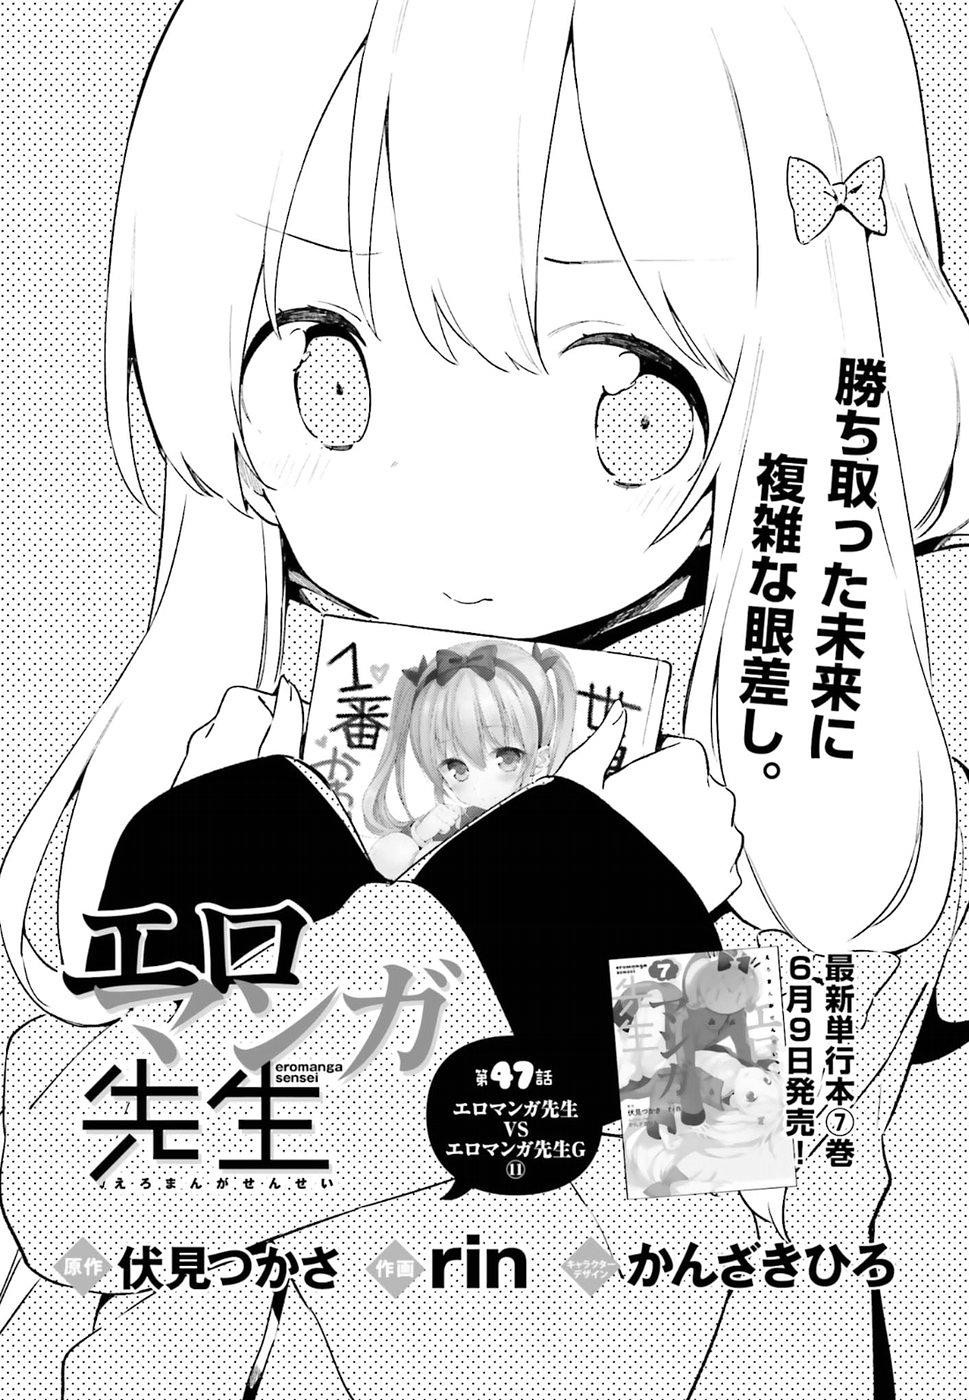 Ero Manga Sensei - Chapter 47 - Page 3